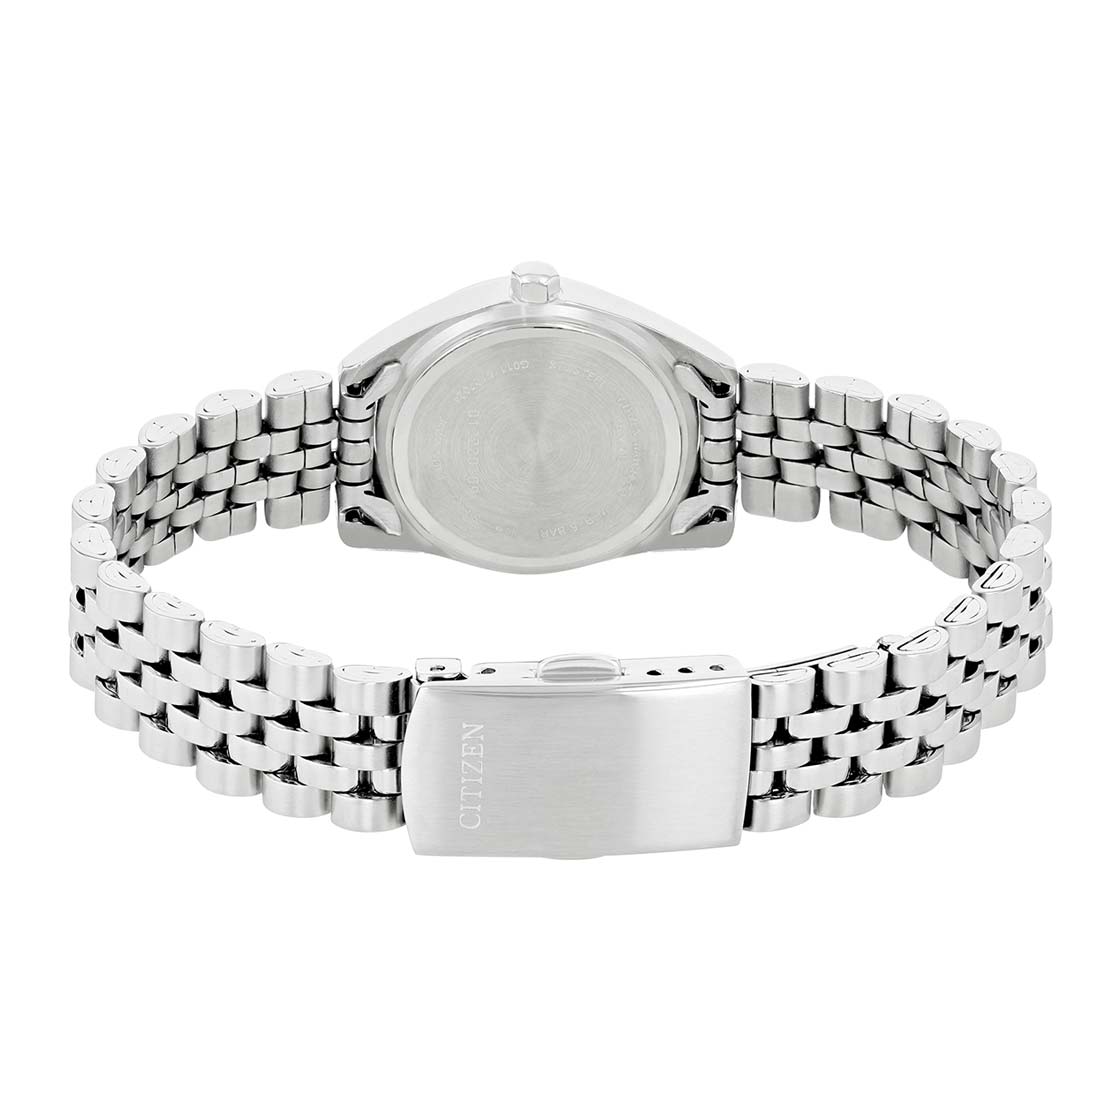 Citizen - EU6060-55D - Stainless Steel Watch For Women